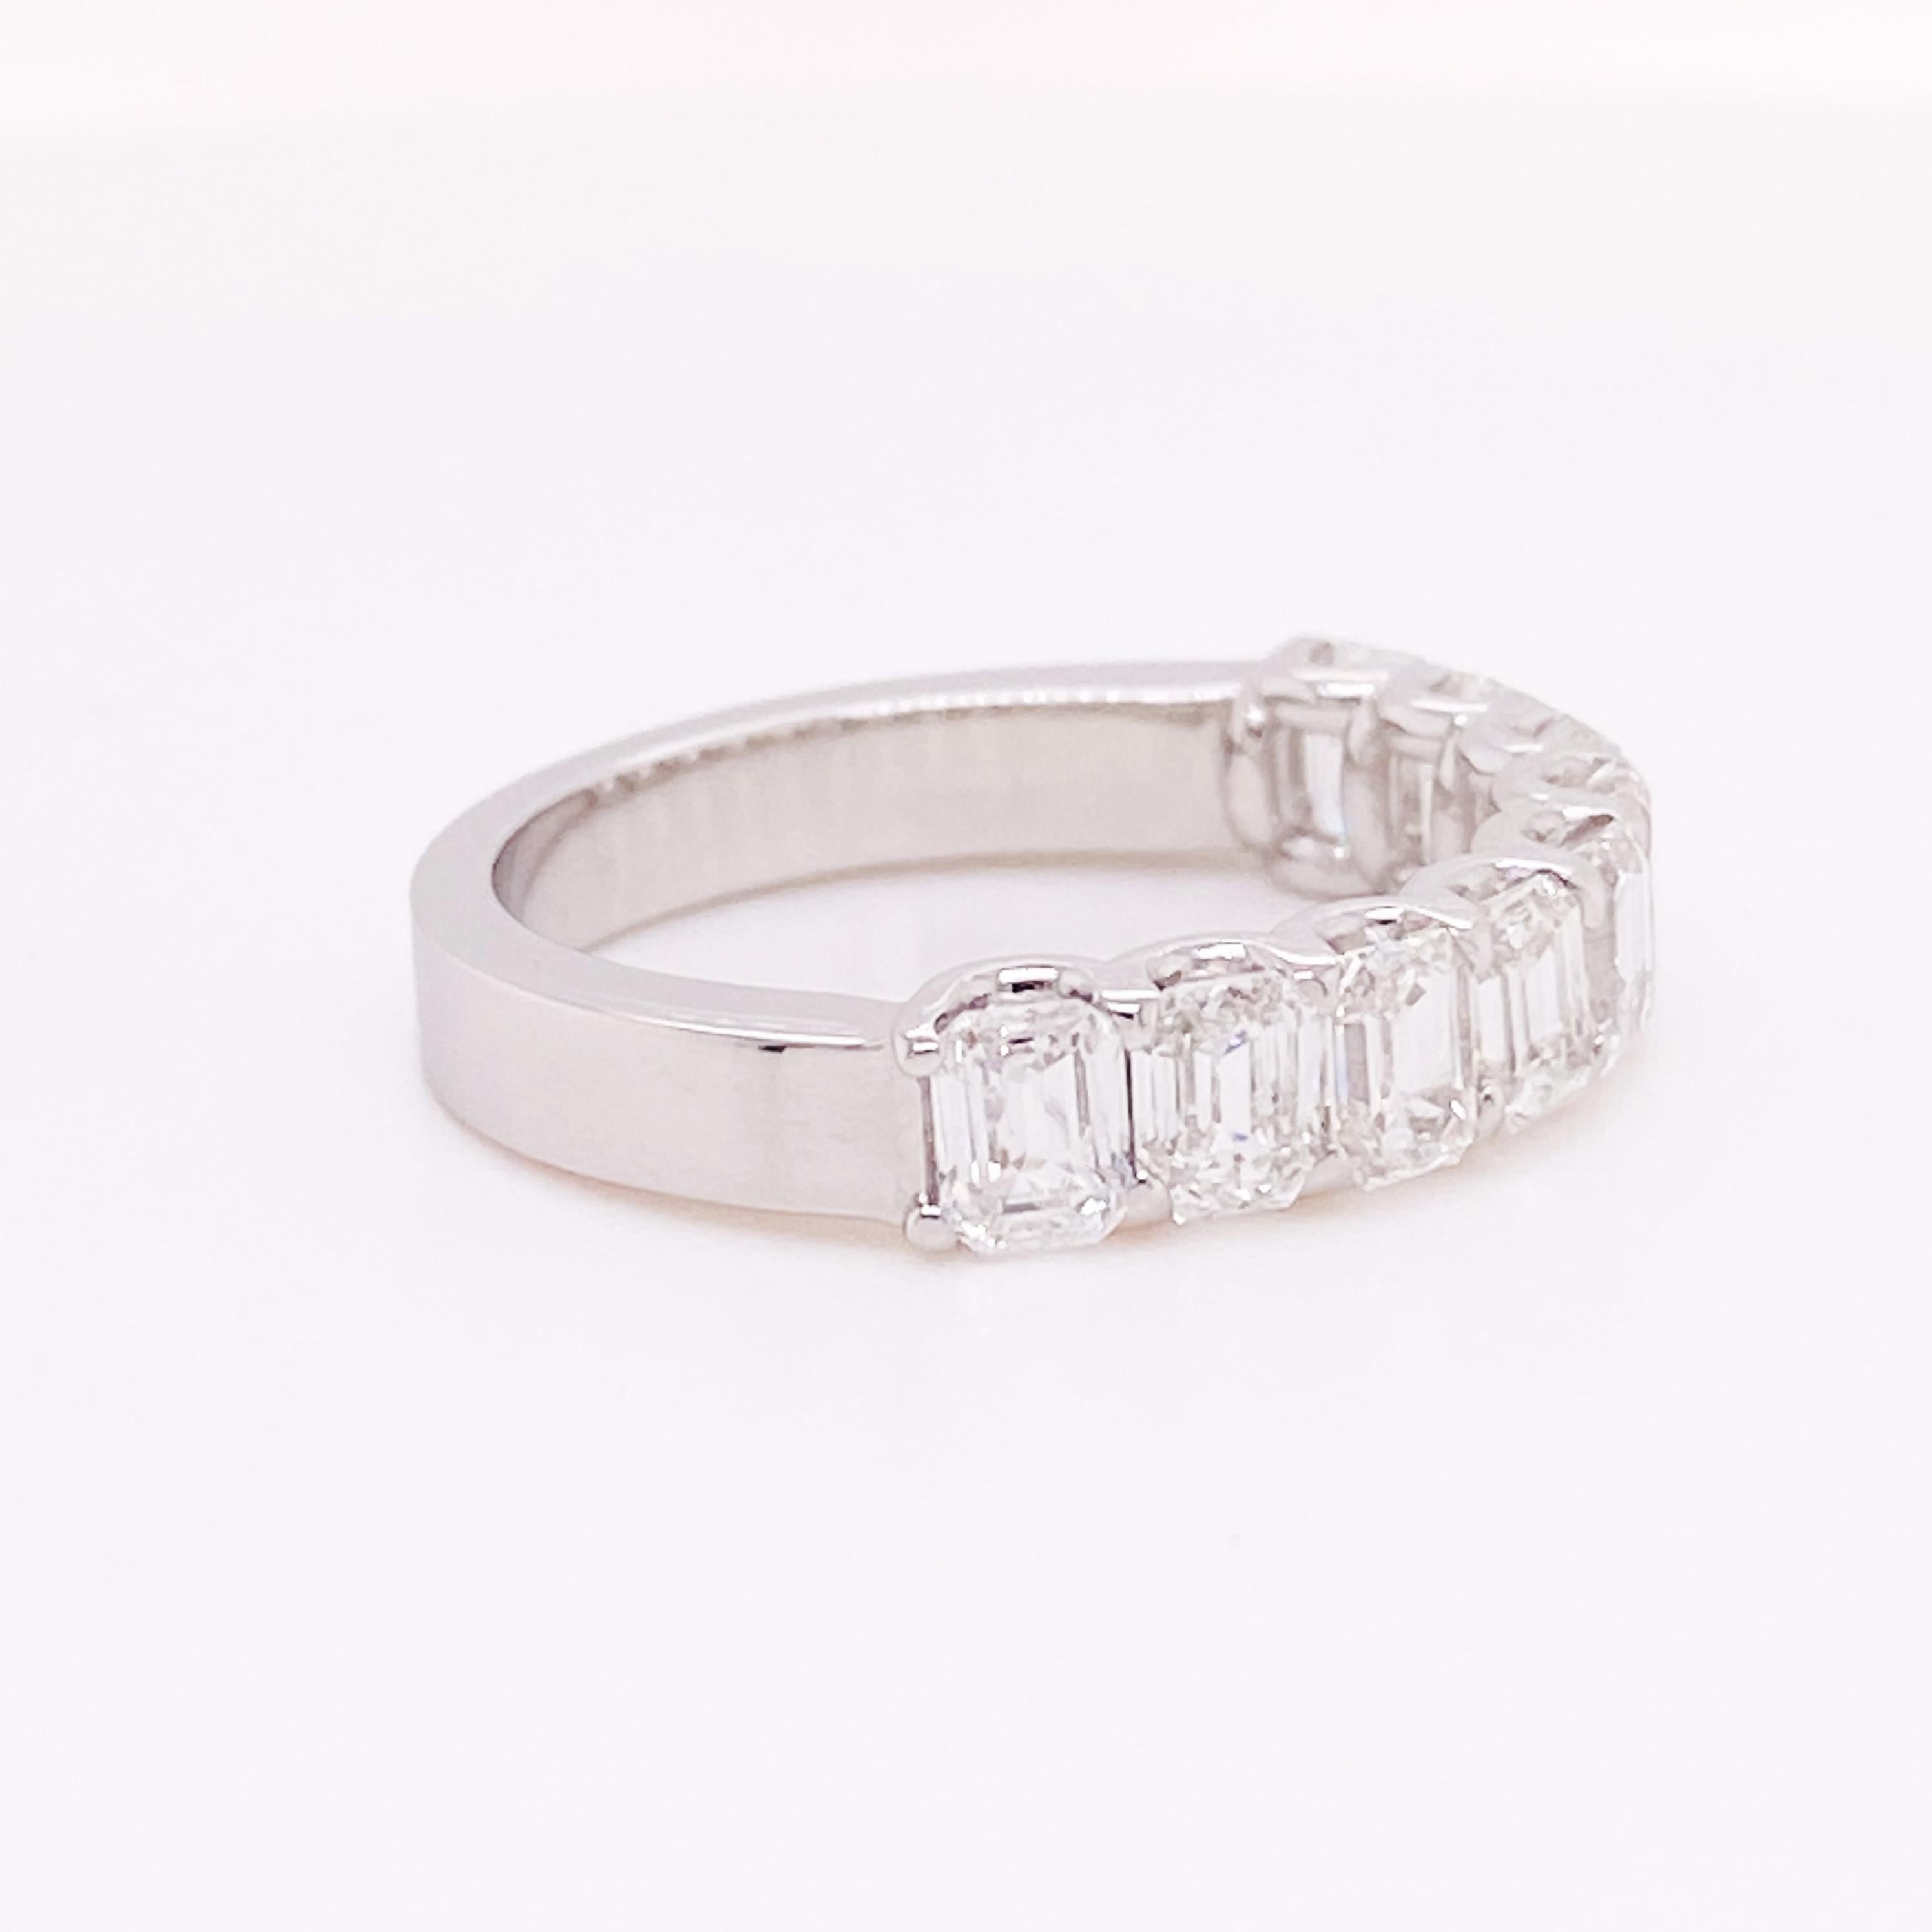 Bande de 10 diamants taille émeraude d'un poids total de 2,40 carats. Ces diamants sont d'une incroyable qualité et d'un design luxueux. Le bracelet est d'un design simple mais d'une grande classe. Les diamants de taille émeraude sont de pureté VS1